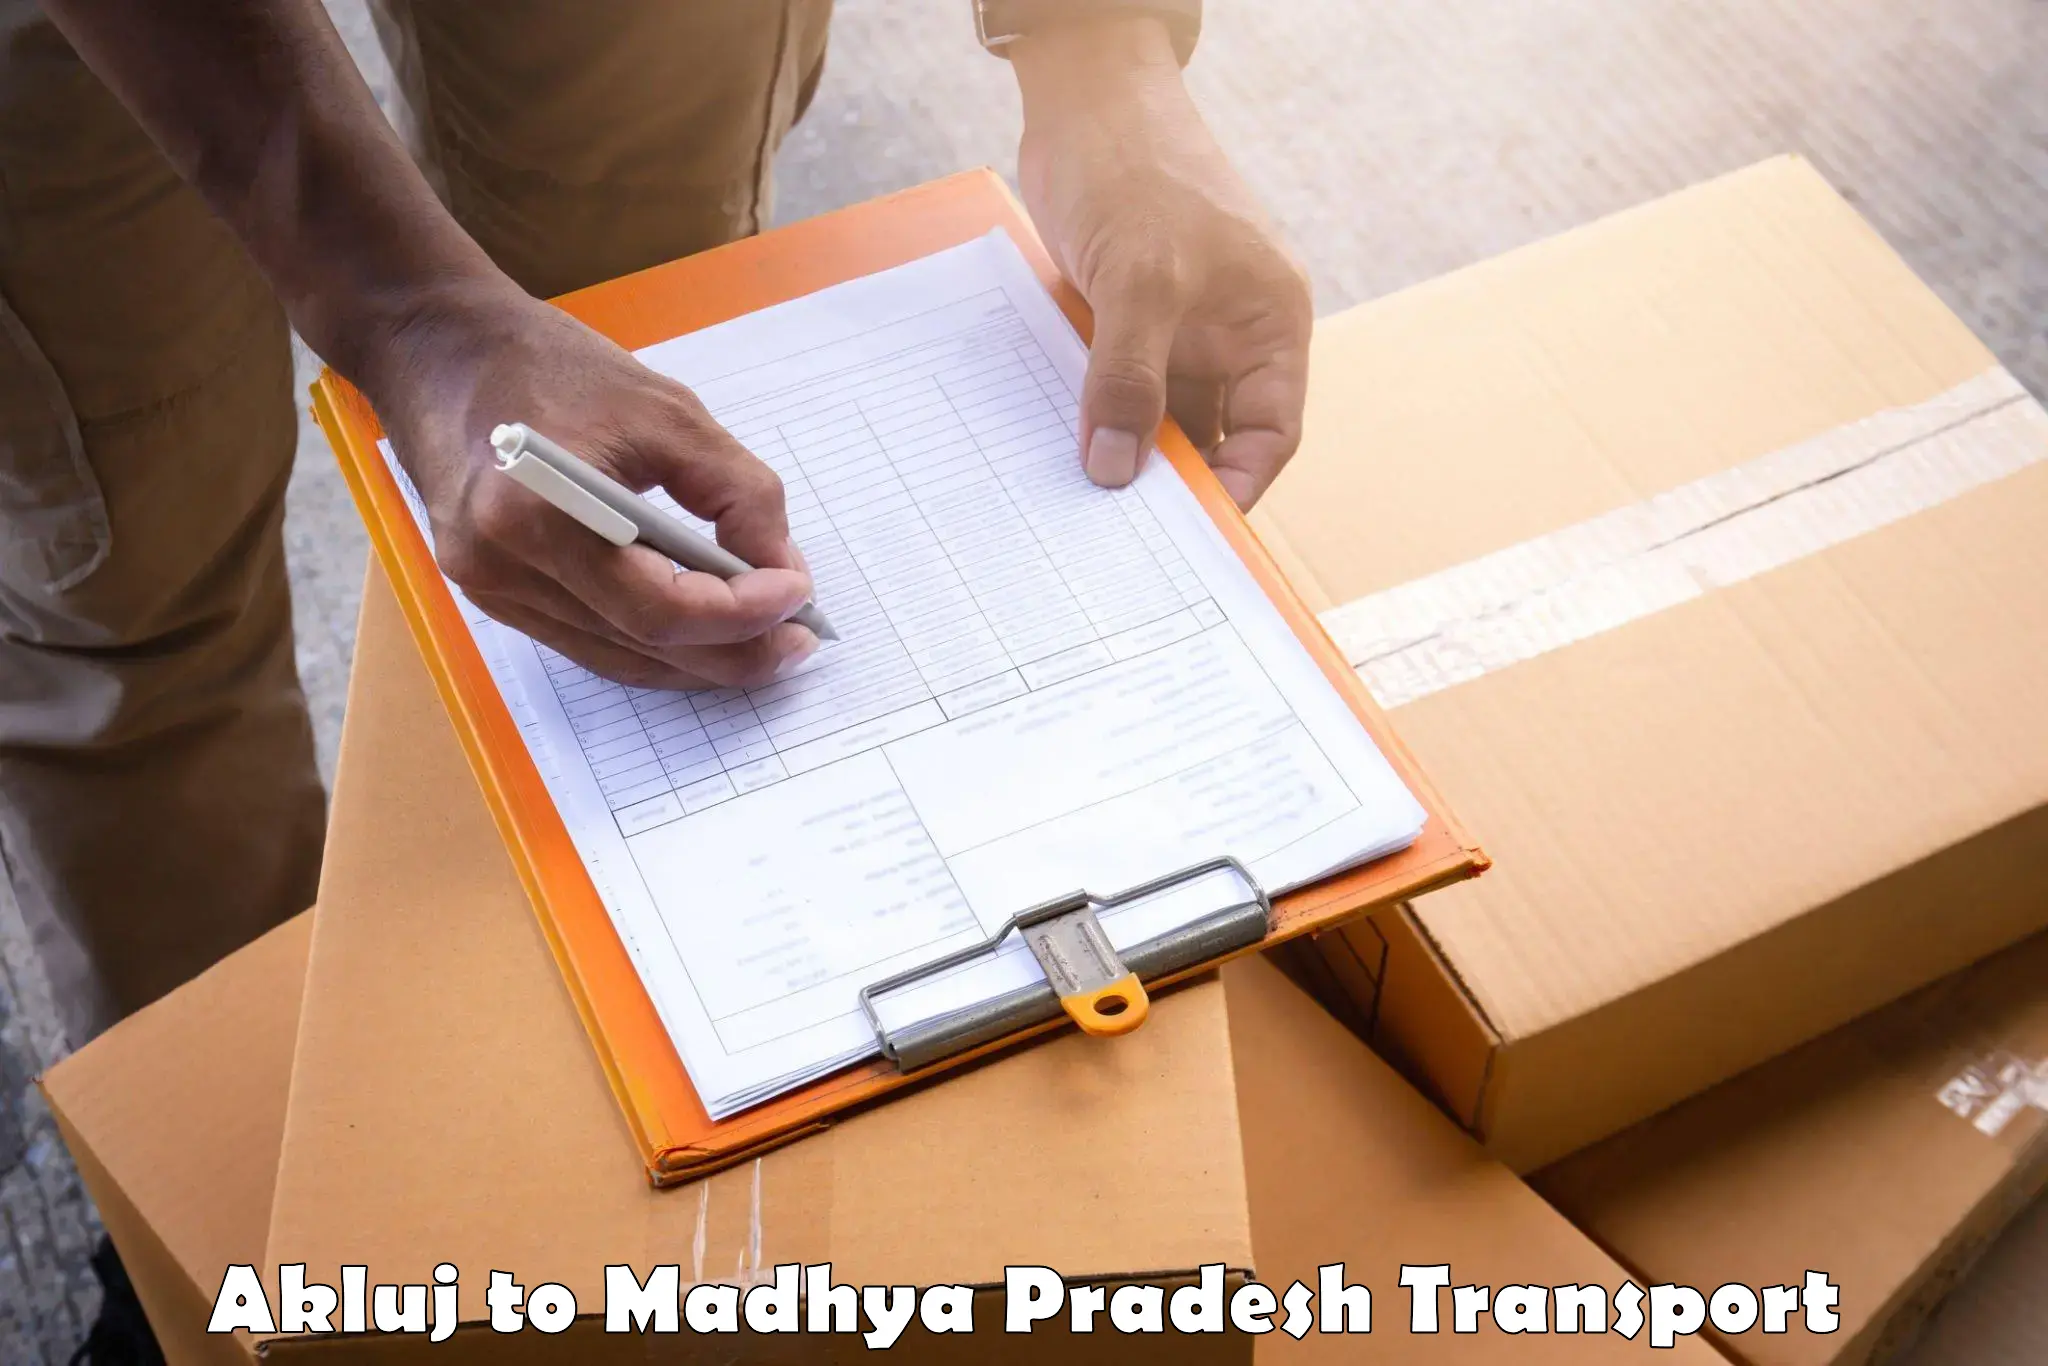 Cargo transport services Akluj to Mandla